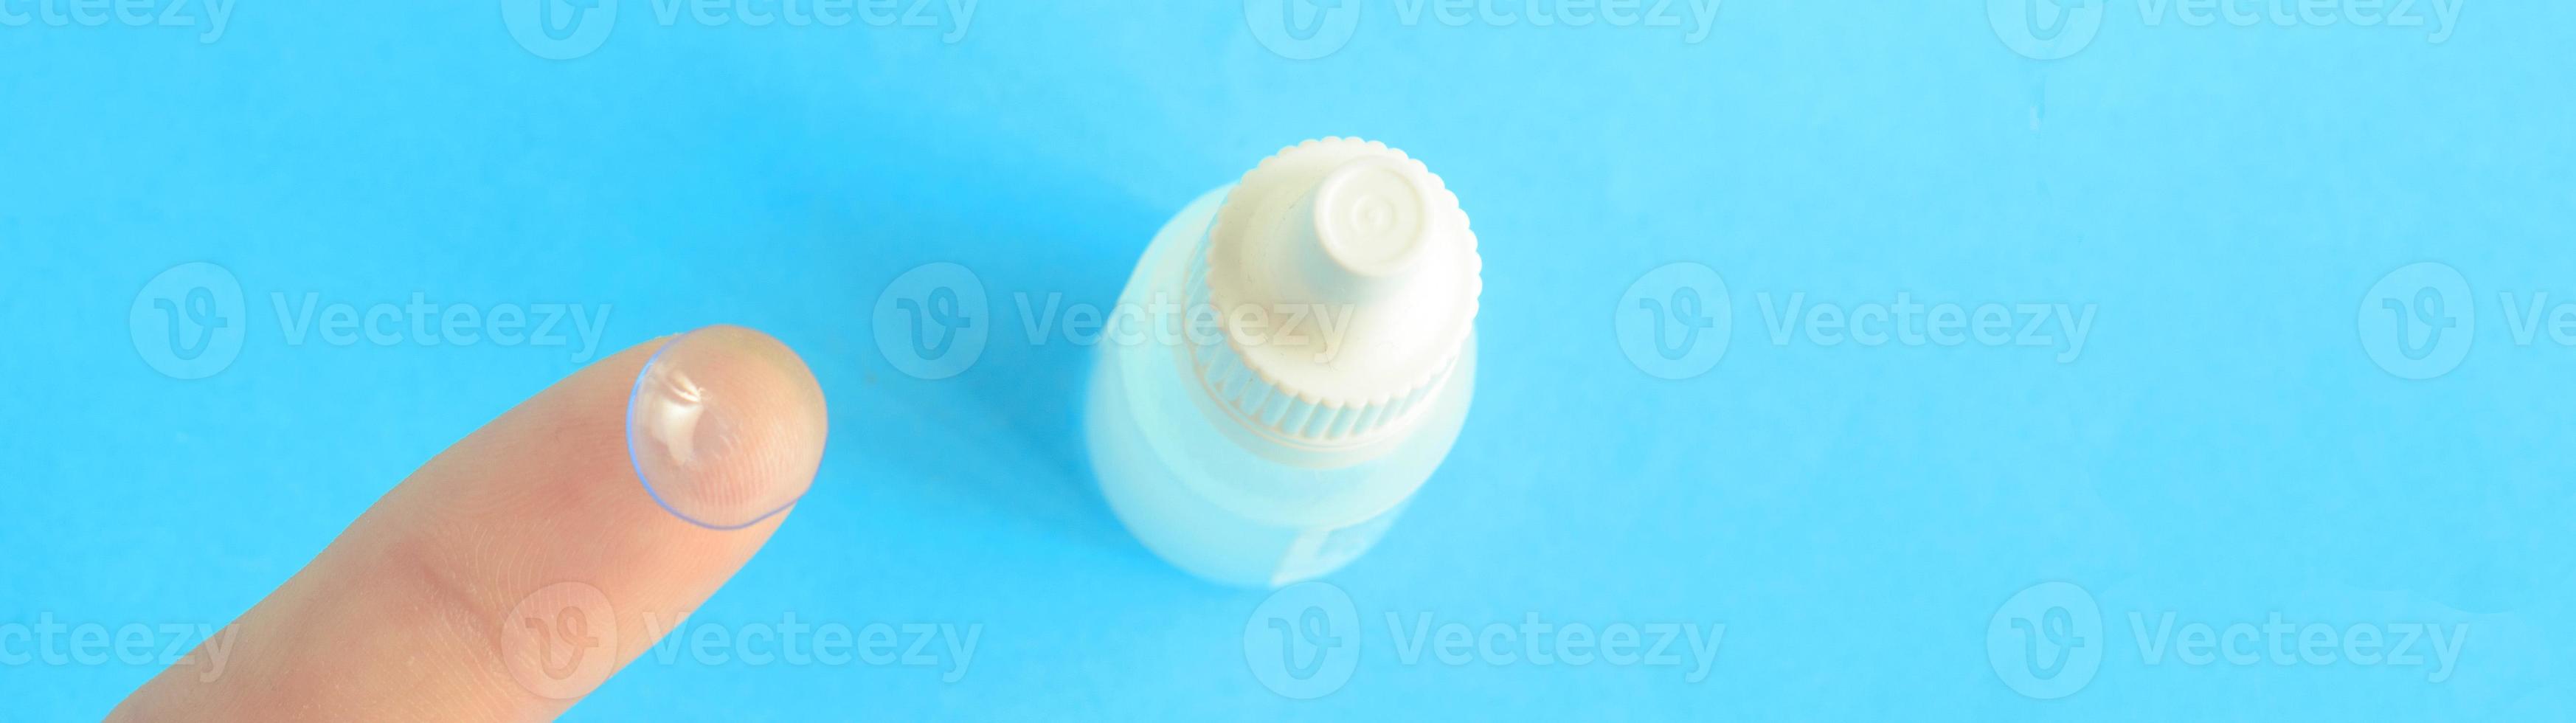 una lente de contacto en un dedo y una pequeña botella de gotas para los ojos en un fondo azul, espacio de copia foto